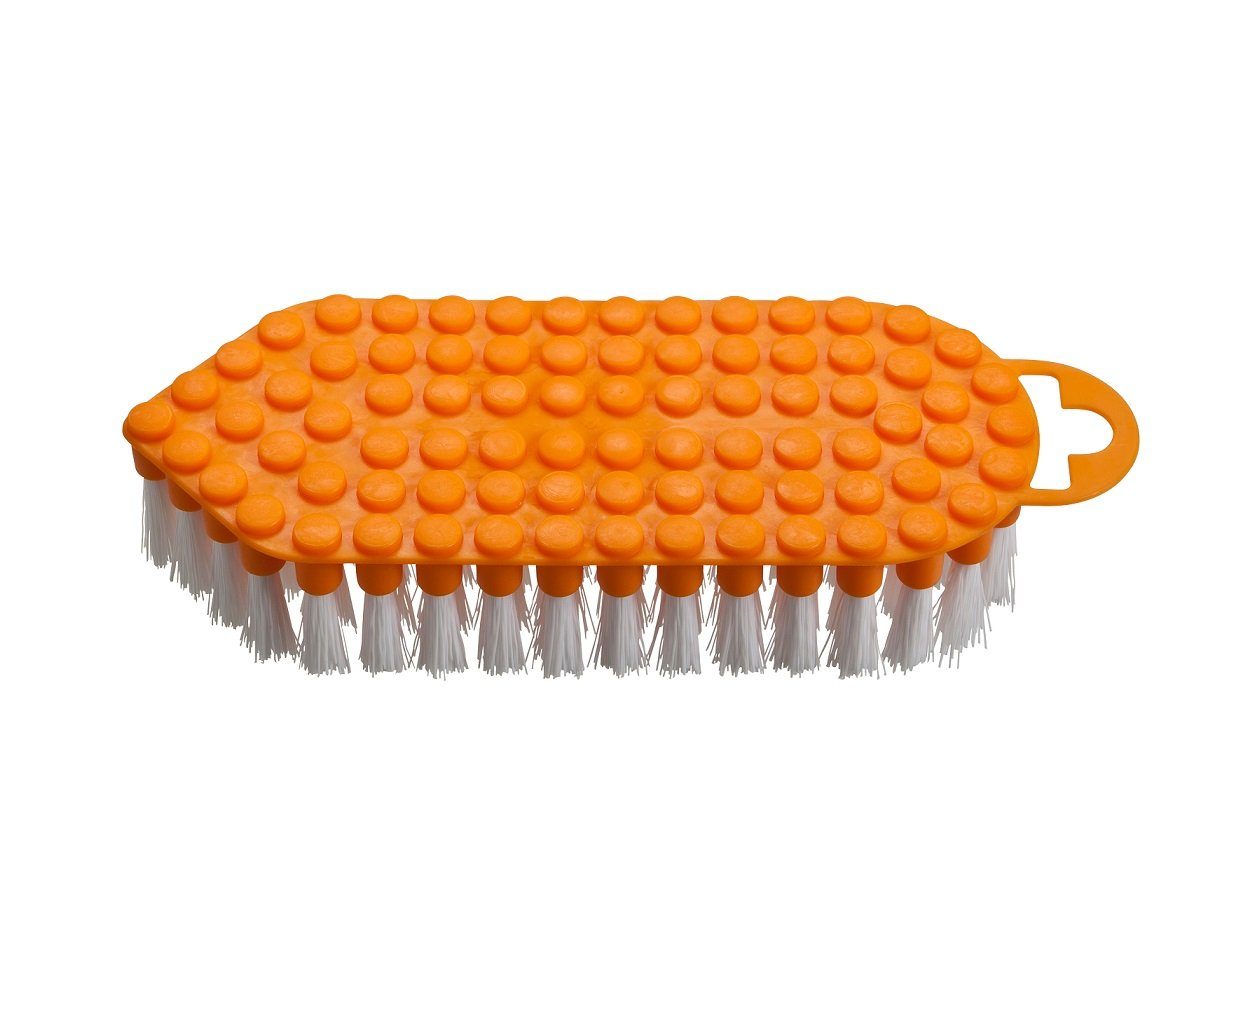 haug bürsten Reinigungsbürste 60322, flexible Scheuerbürste mit harten Borsten, orange, mit Rundungen und Kanten, aus PP - Made in Germany